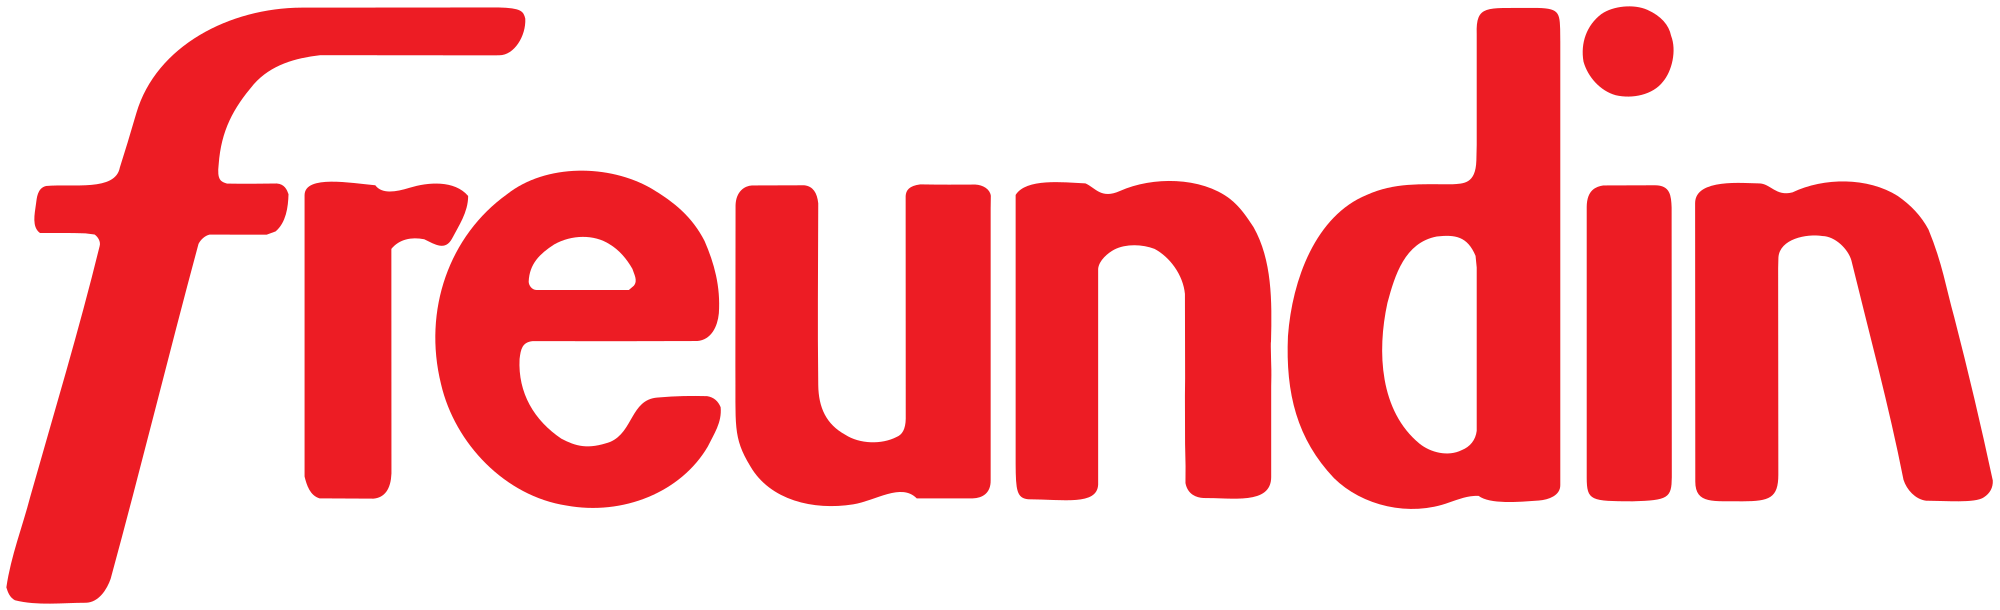 Freundin-Logo.png